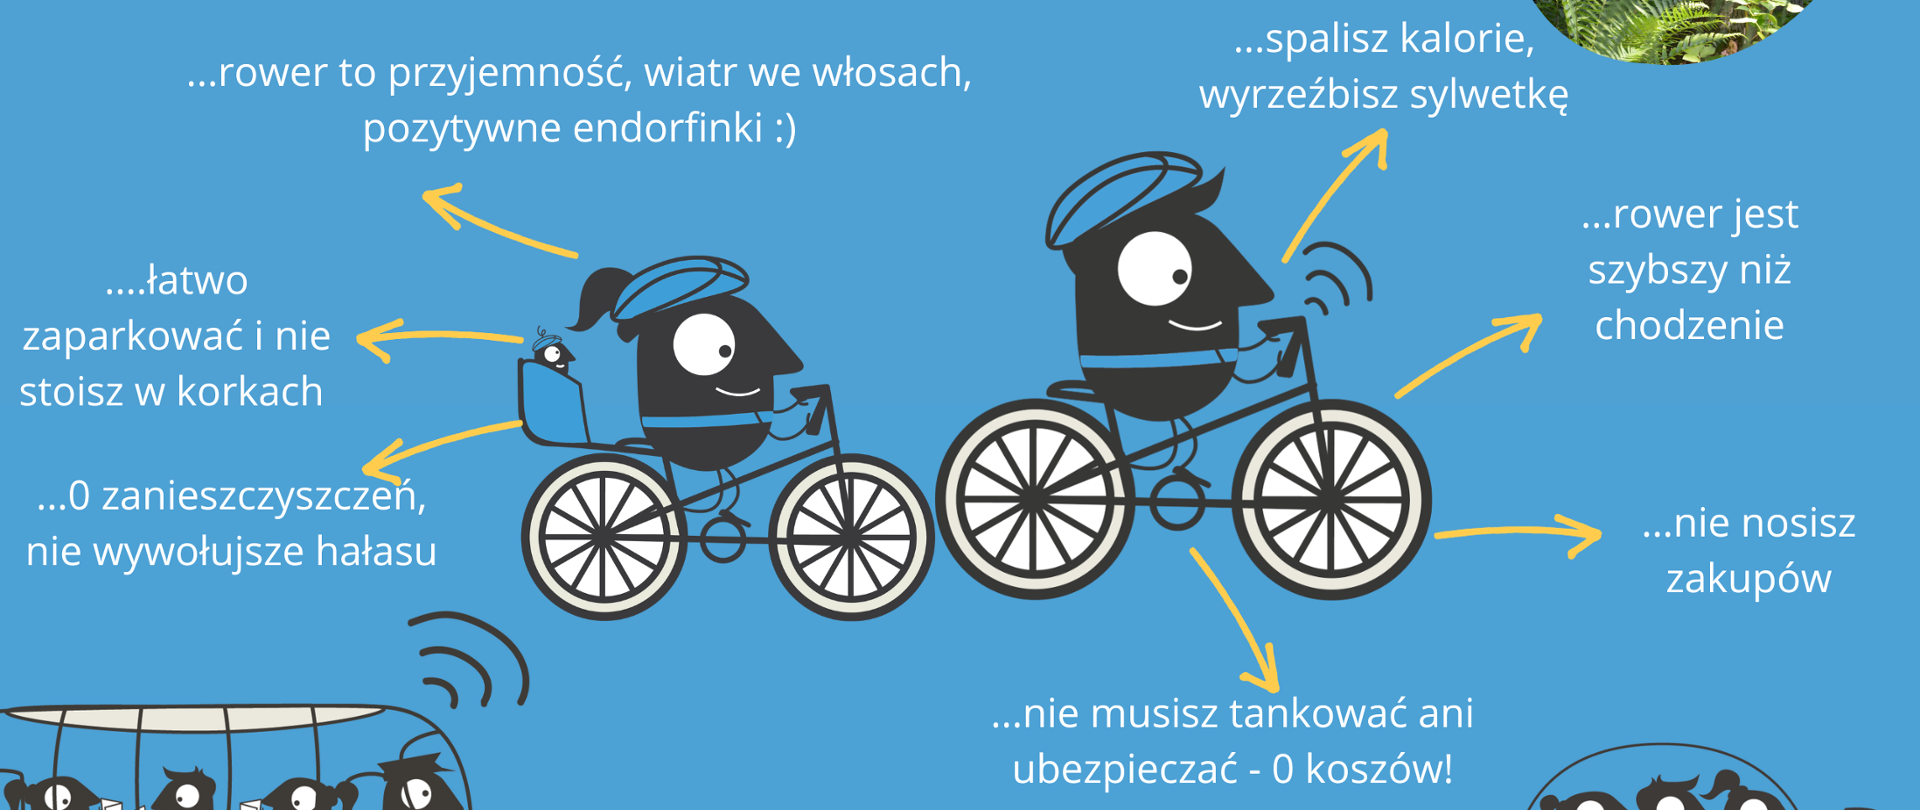 Na niebieskim tle zdjęcie oznakowania szlaku rowerowego. W lewym rogu logo kampanii i herb powiatu hajnowskiego (na żółtym tle żubr i dwa świerki), W centralnym miejscu plakatu dwie postacie na rowerze, wokół nich napisy: Przesiadaj się i jedź bo: rower to przyjemność, wiatr we włosach, pozytywne endorfinki, spalisz kalorie, wyrzeźbisz sylwetkę, rower jest szybszy niż chodzenie, nie nosisz zakupów, nie musisz tankować ani ubezpieczać - 0 kosztów, 0 zanieczyszczeń, nie wywołujesz hałasu, łatwo parkować i nie stoisz w korkach